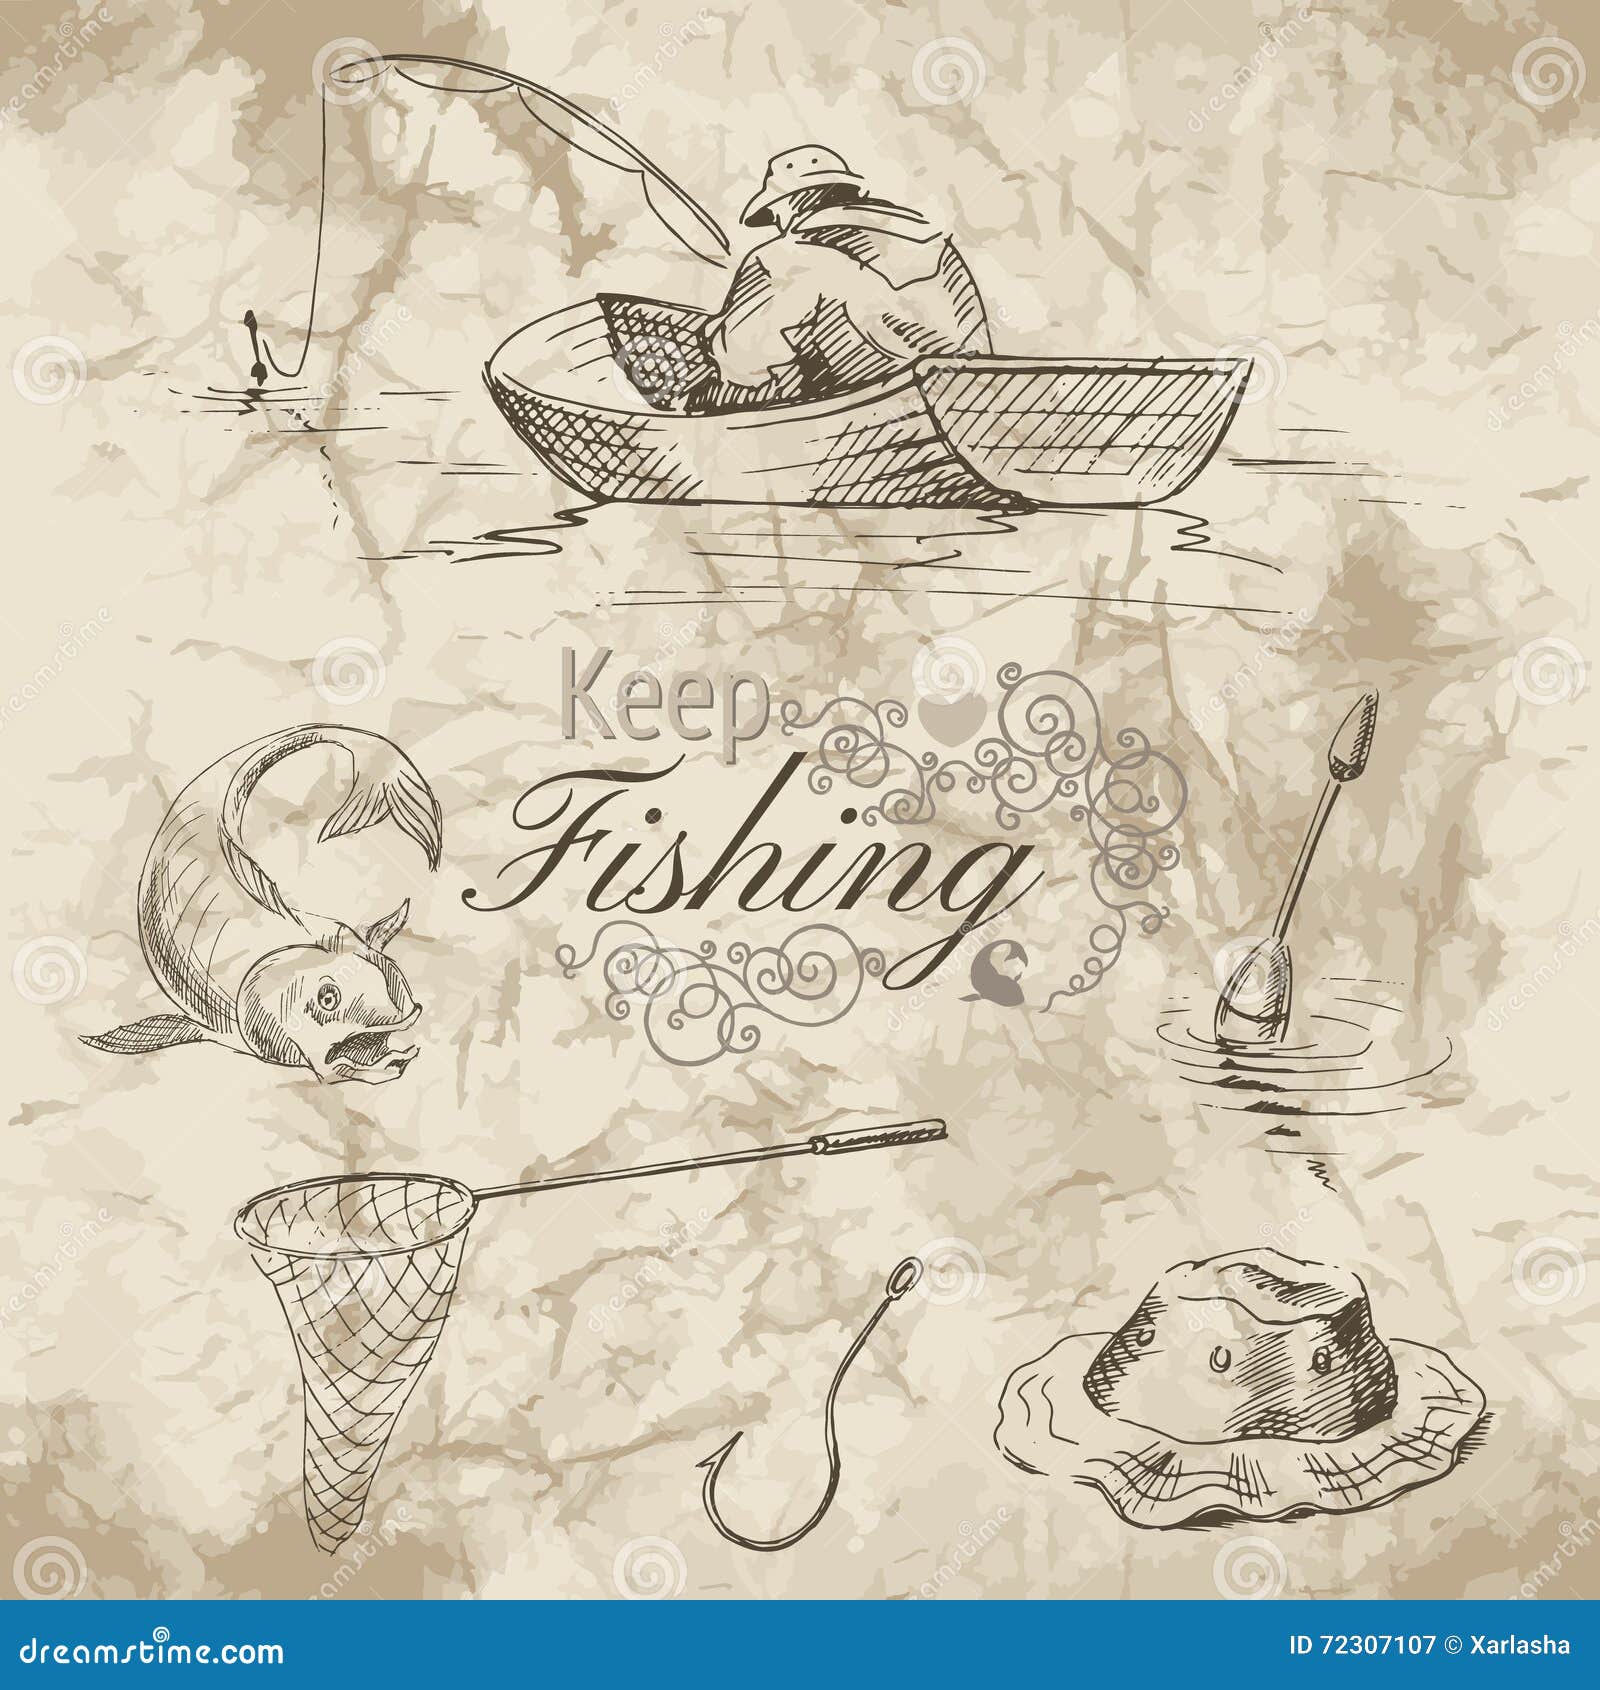 Fishing Boat Sketch Stock Illustrations – 2,917 Fishing Boat